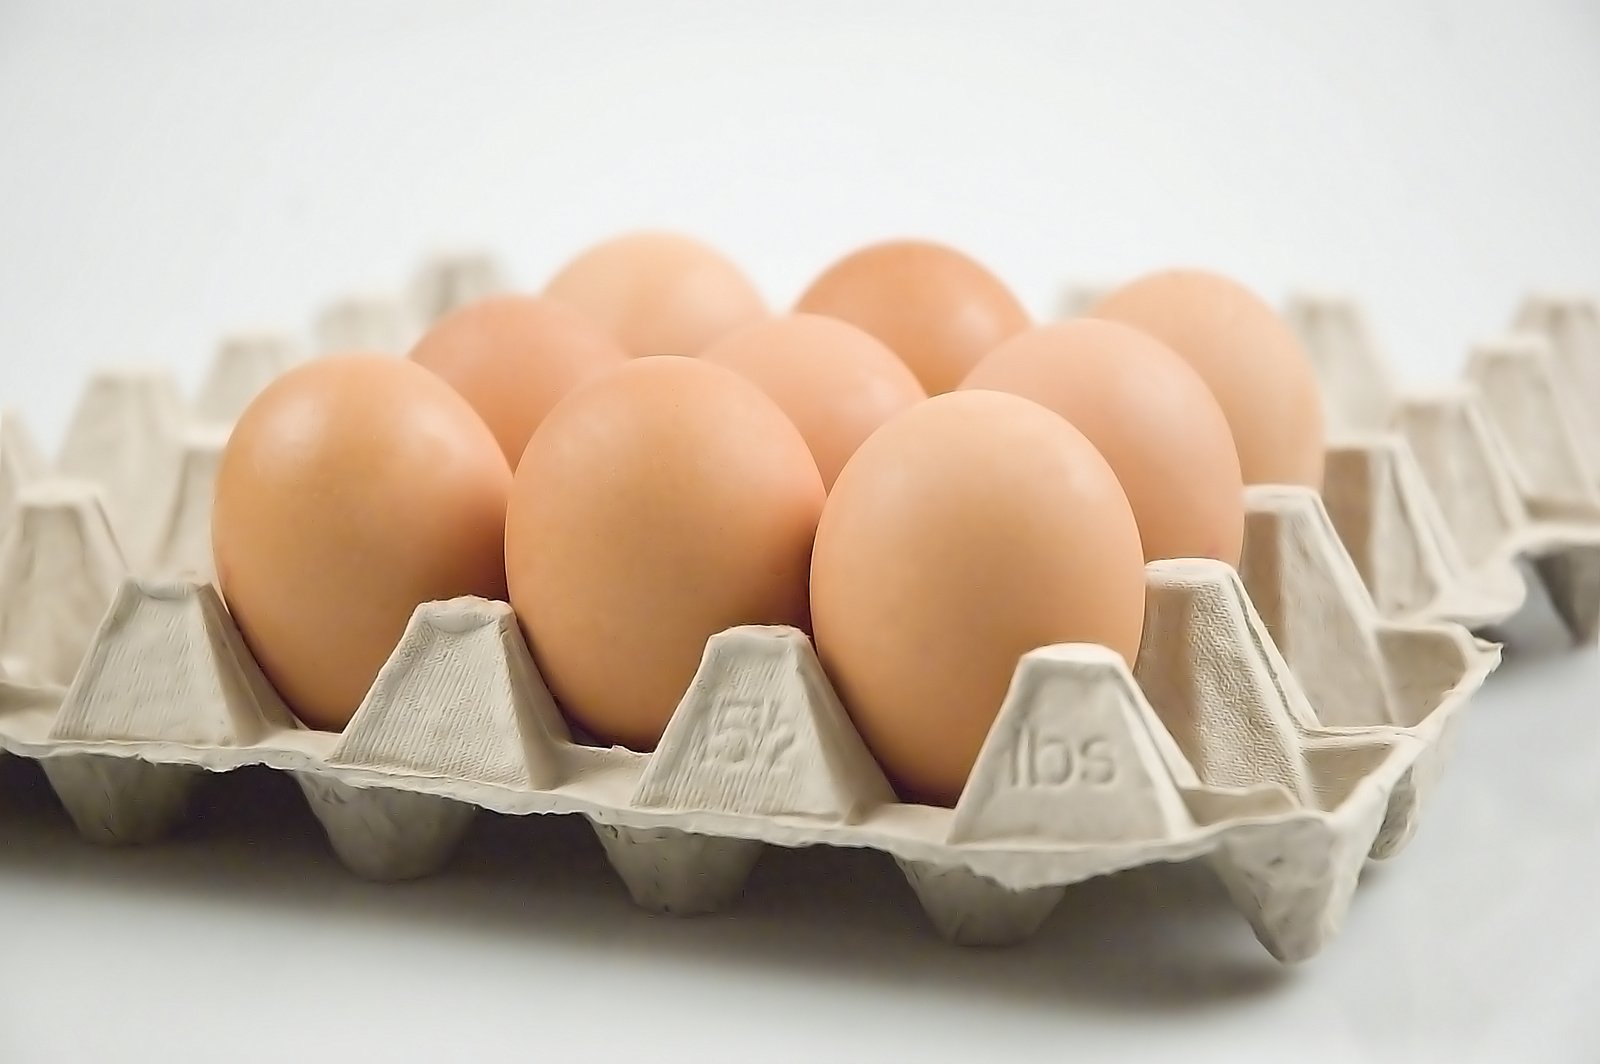 eggs in an egg carton